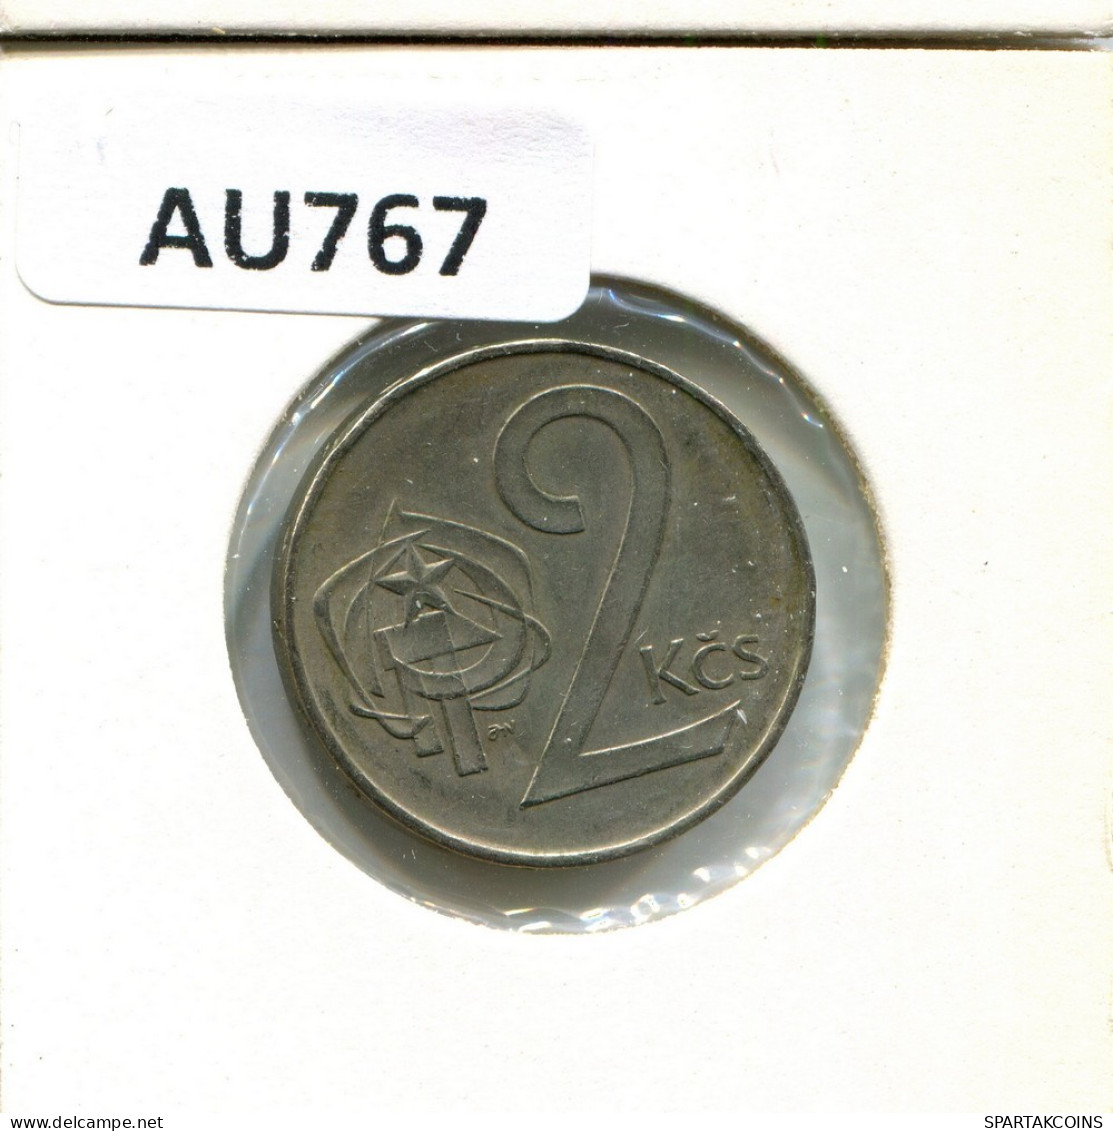 2 KORUN 1983 CHECOSLOVAQUIA CZECHOESLOVAQUIA SLOVAKIA Moneda #AU767.E.A - Tsjechoslowakije